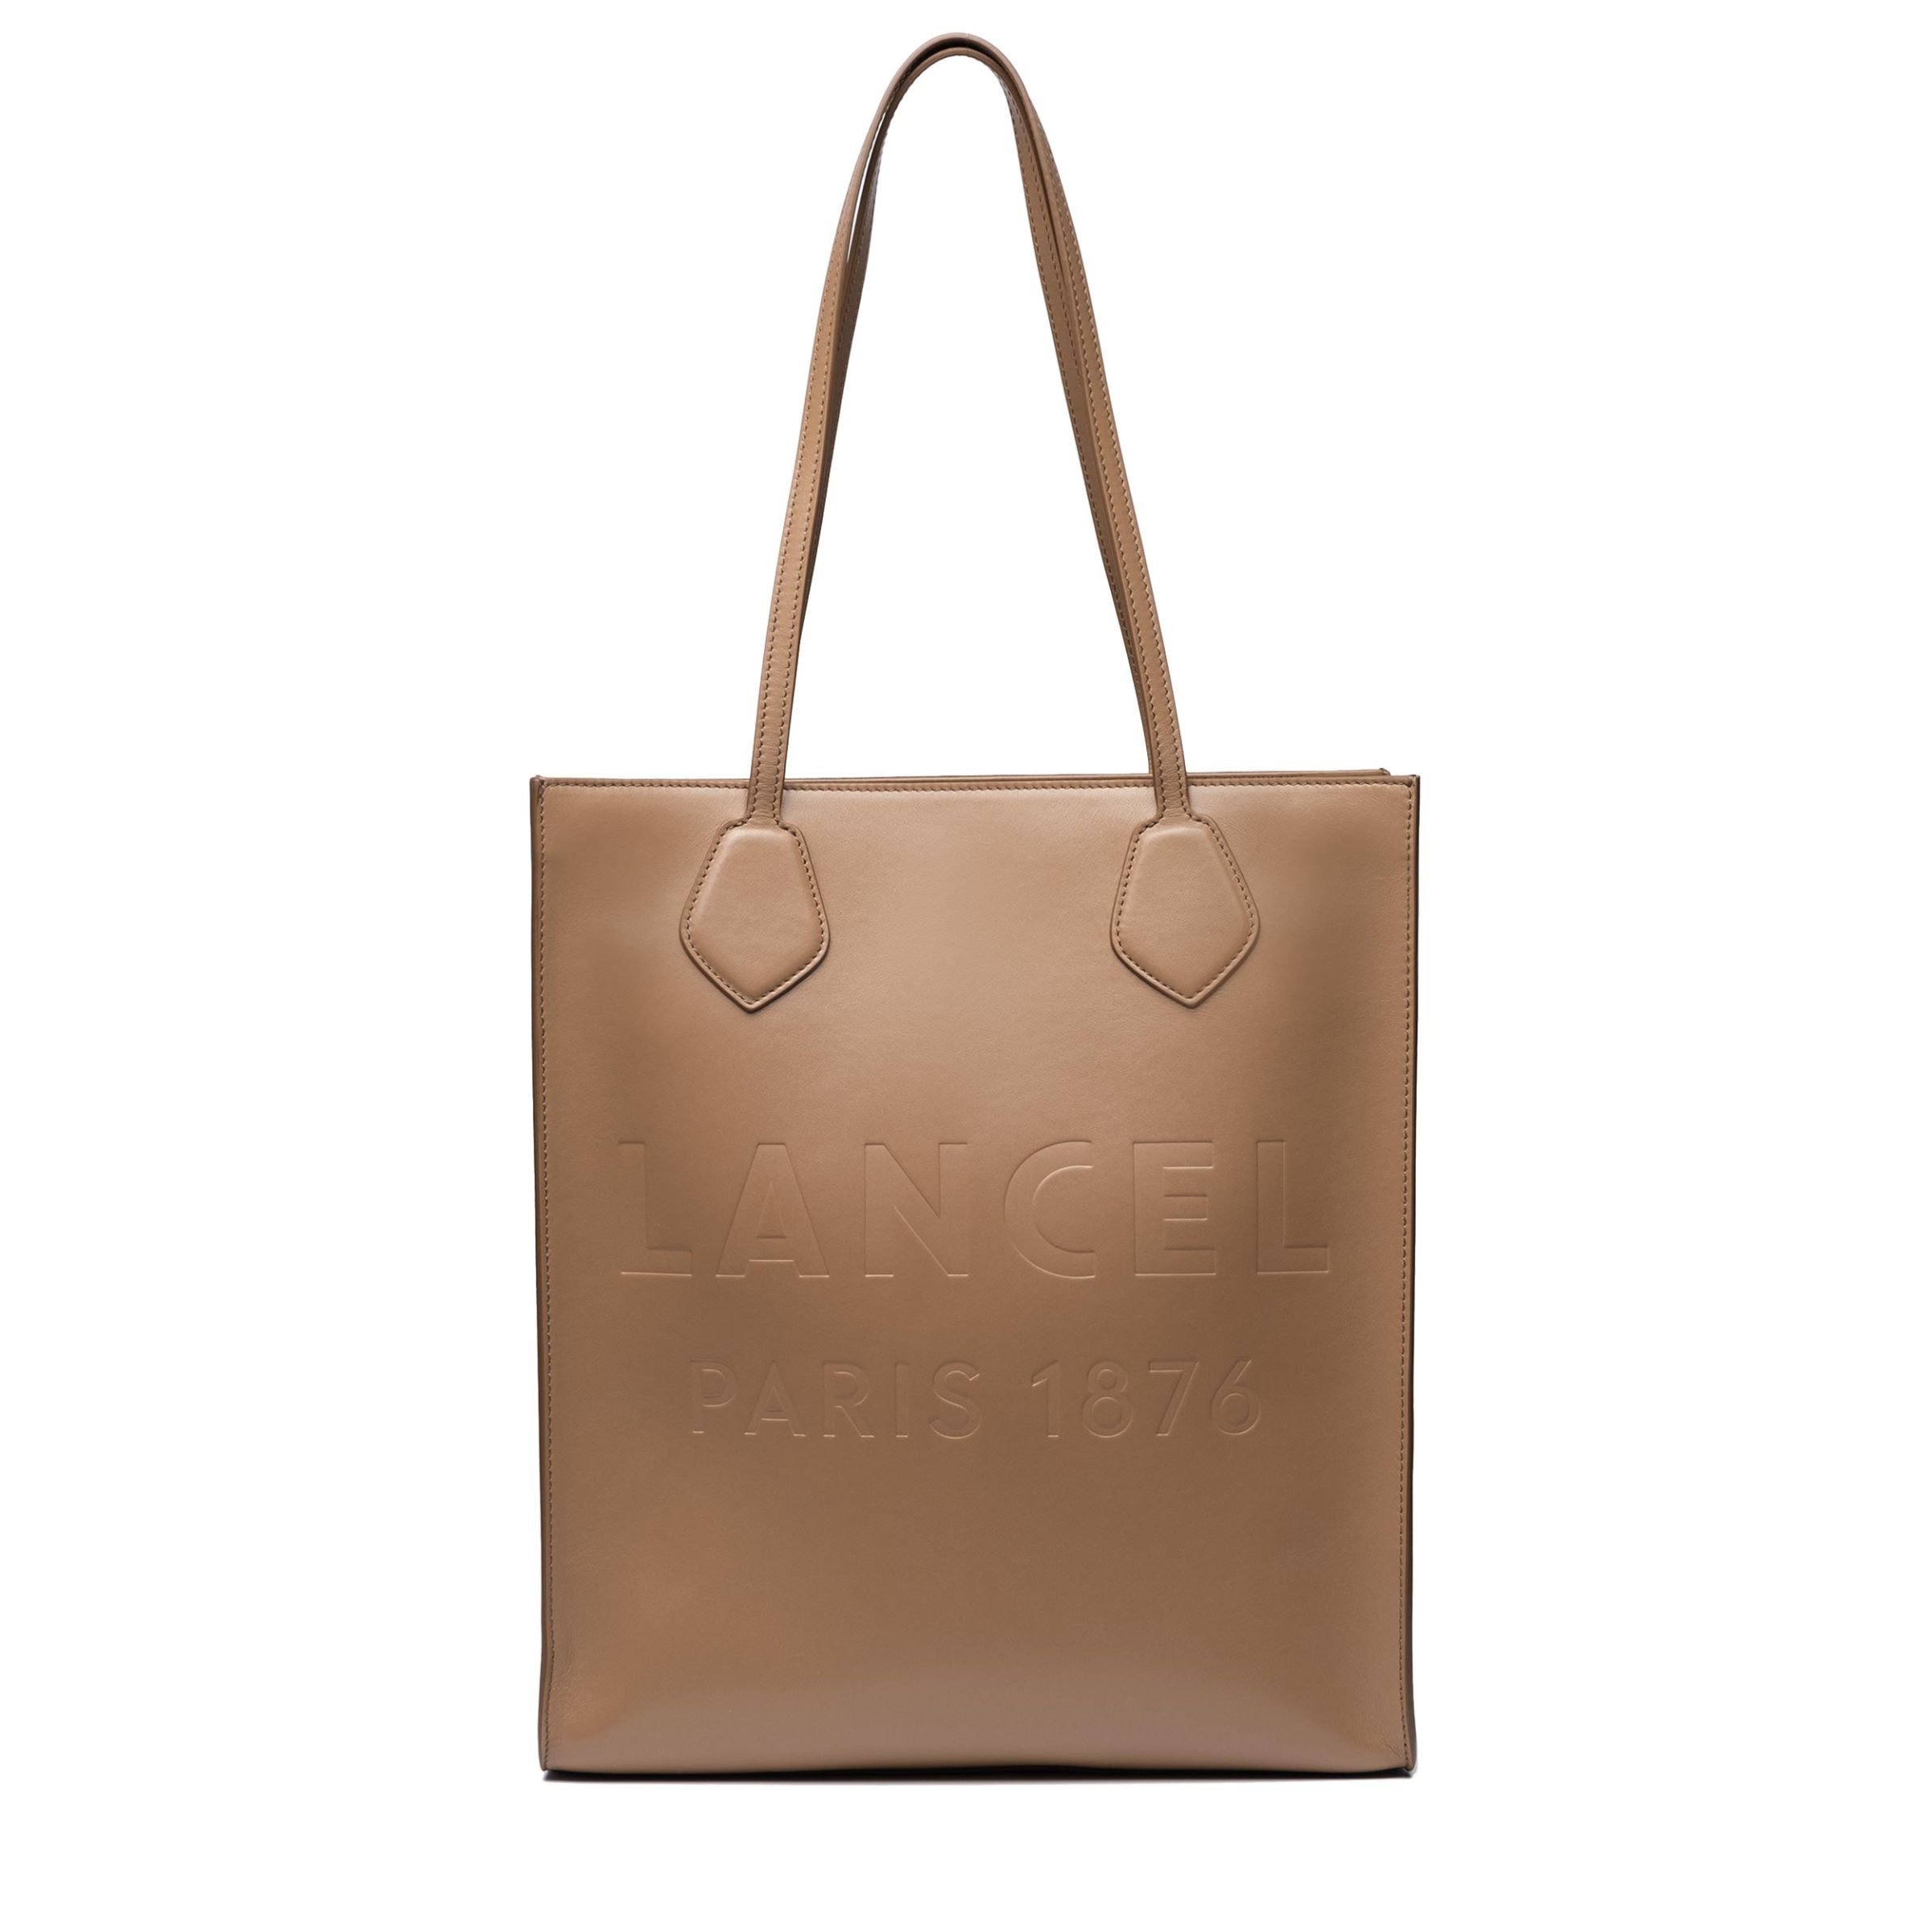 Сумка Lancel Essential  коричневая